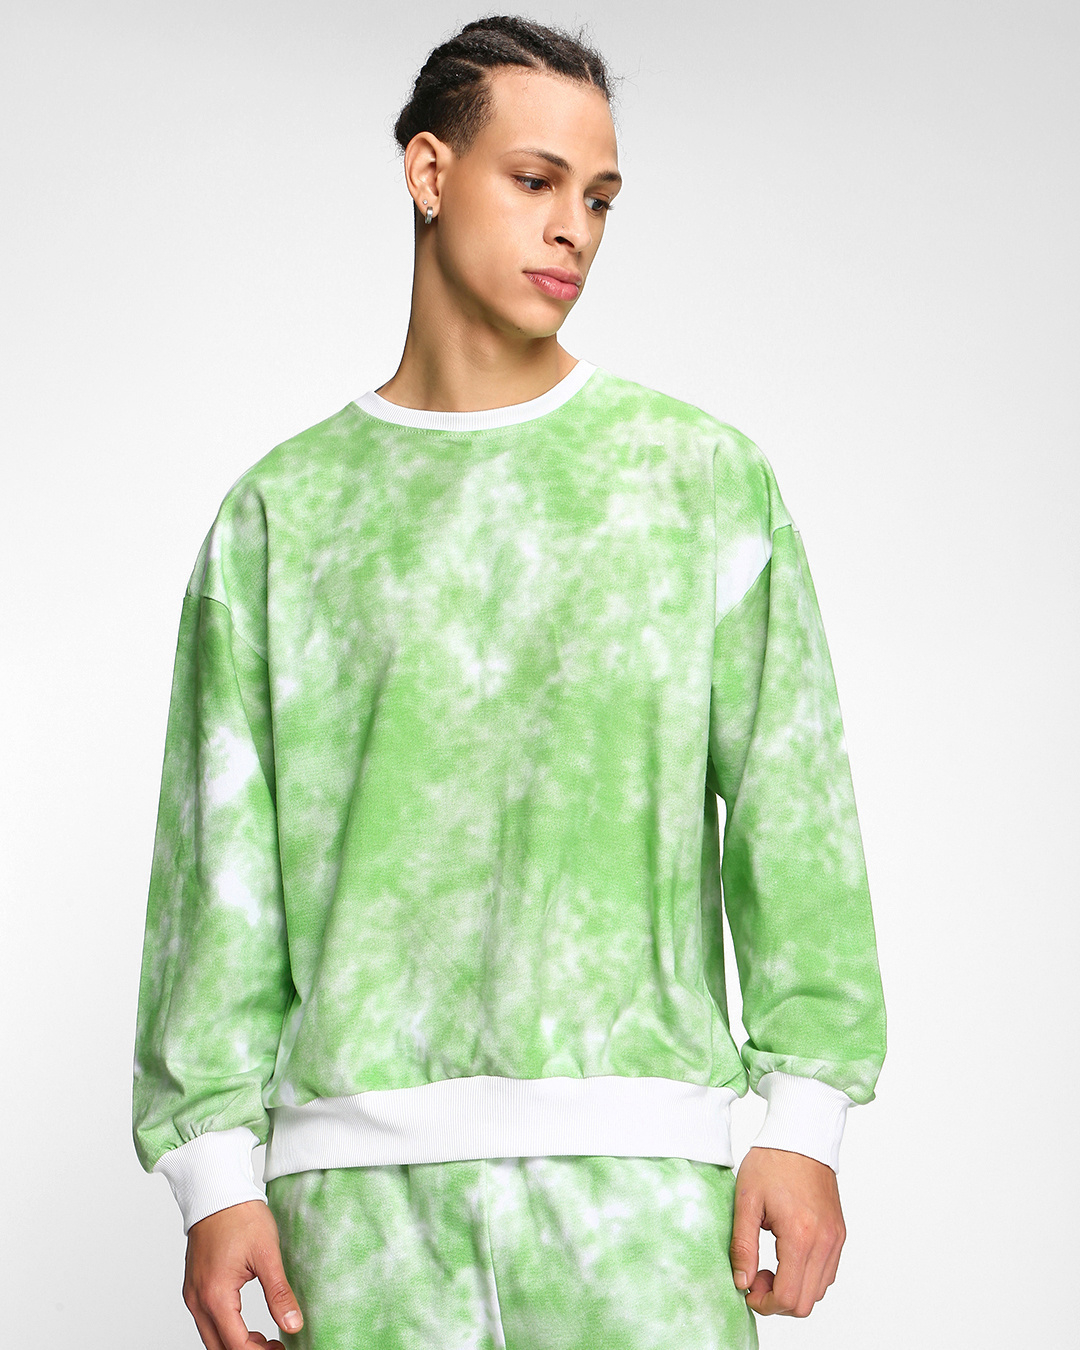 Buy Men's Green & White Tie & Dye Oversized Sweatshirt Online at Bewakoof